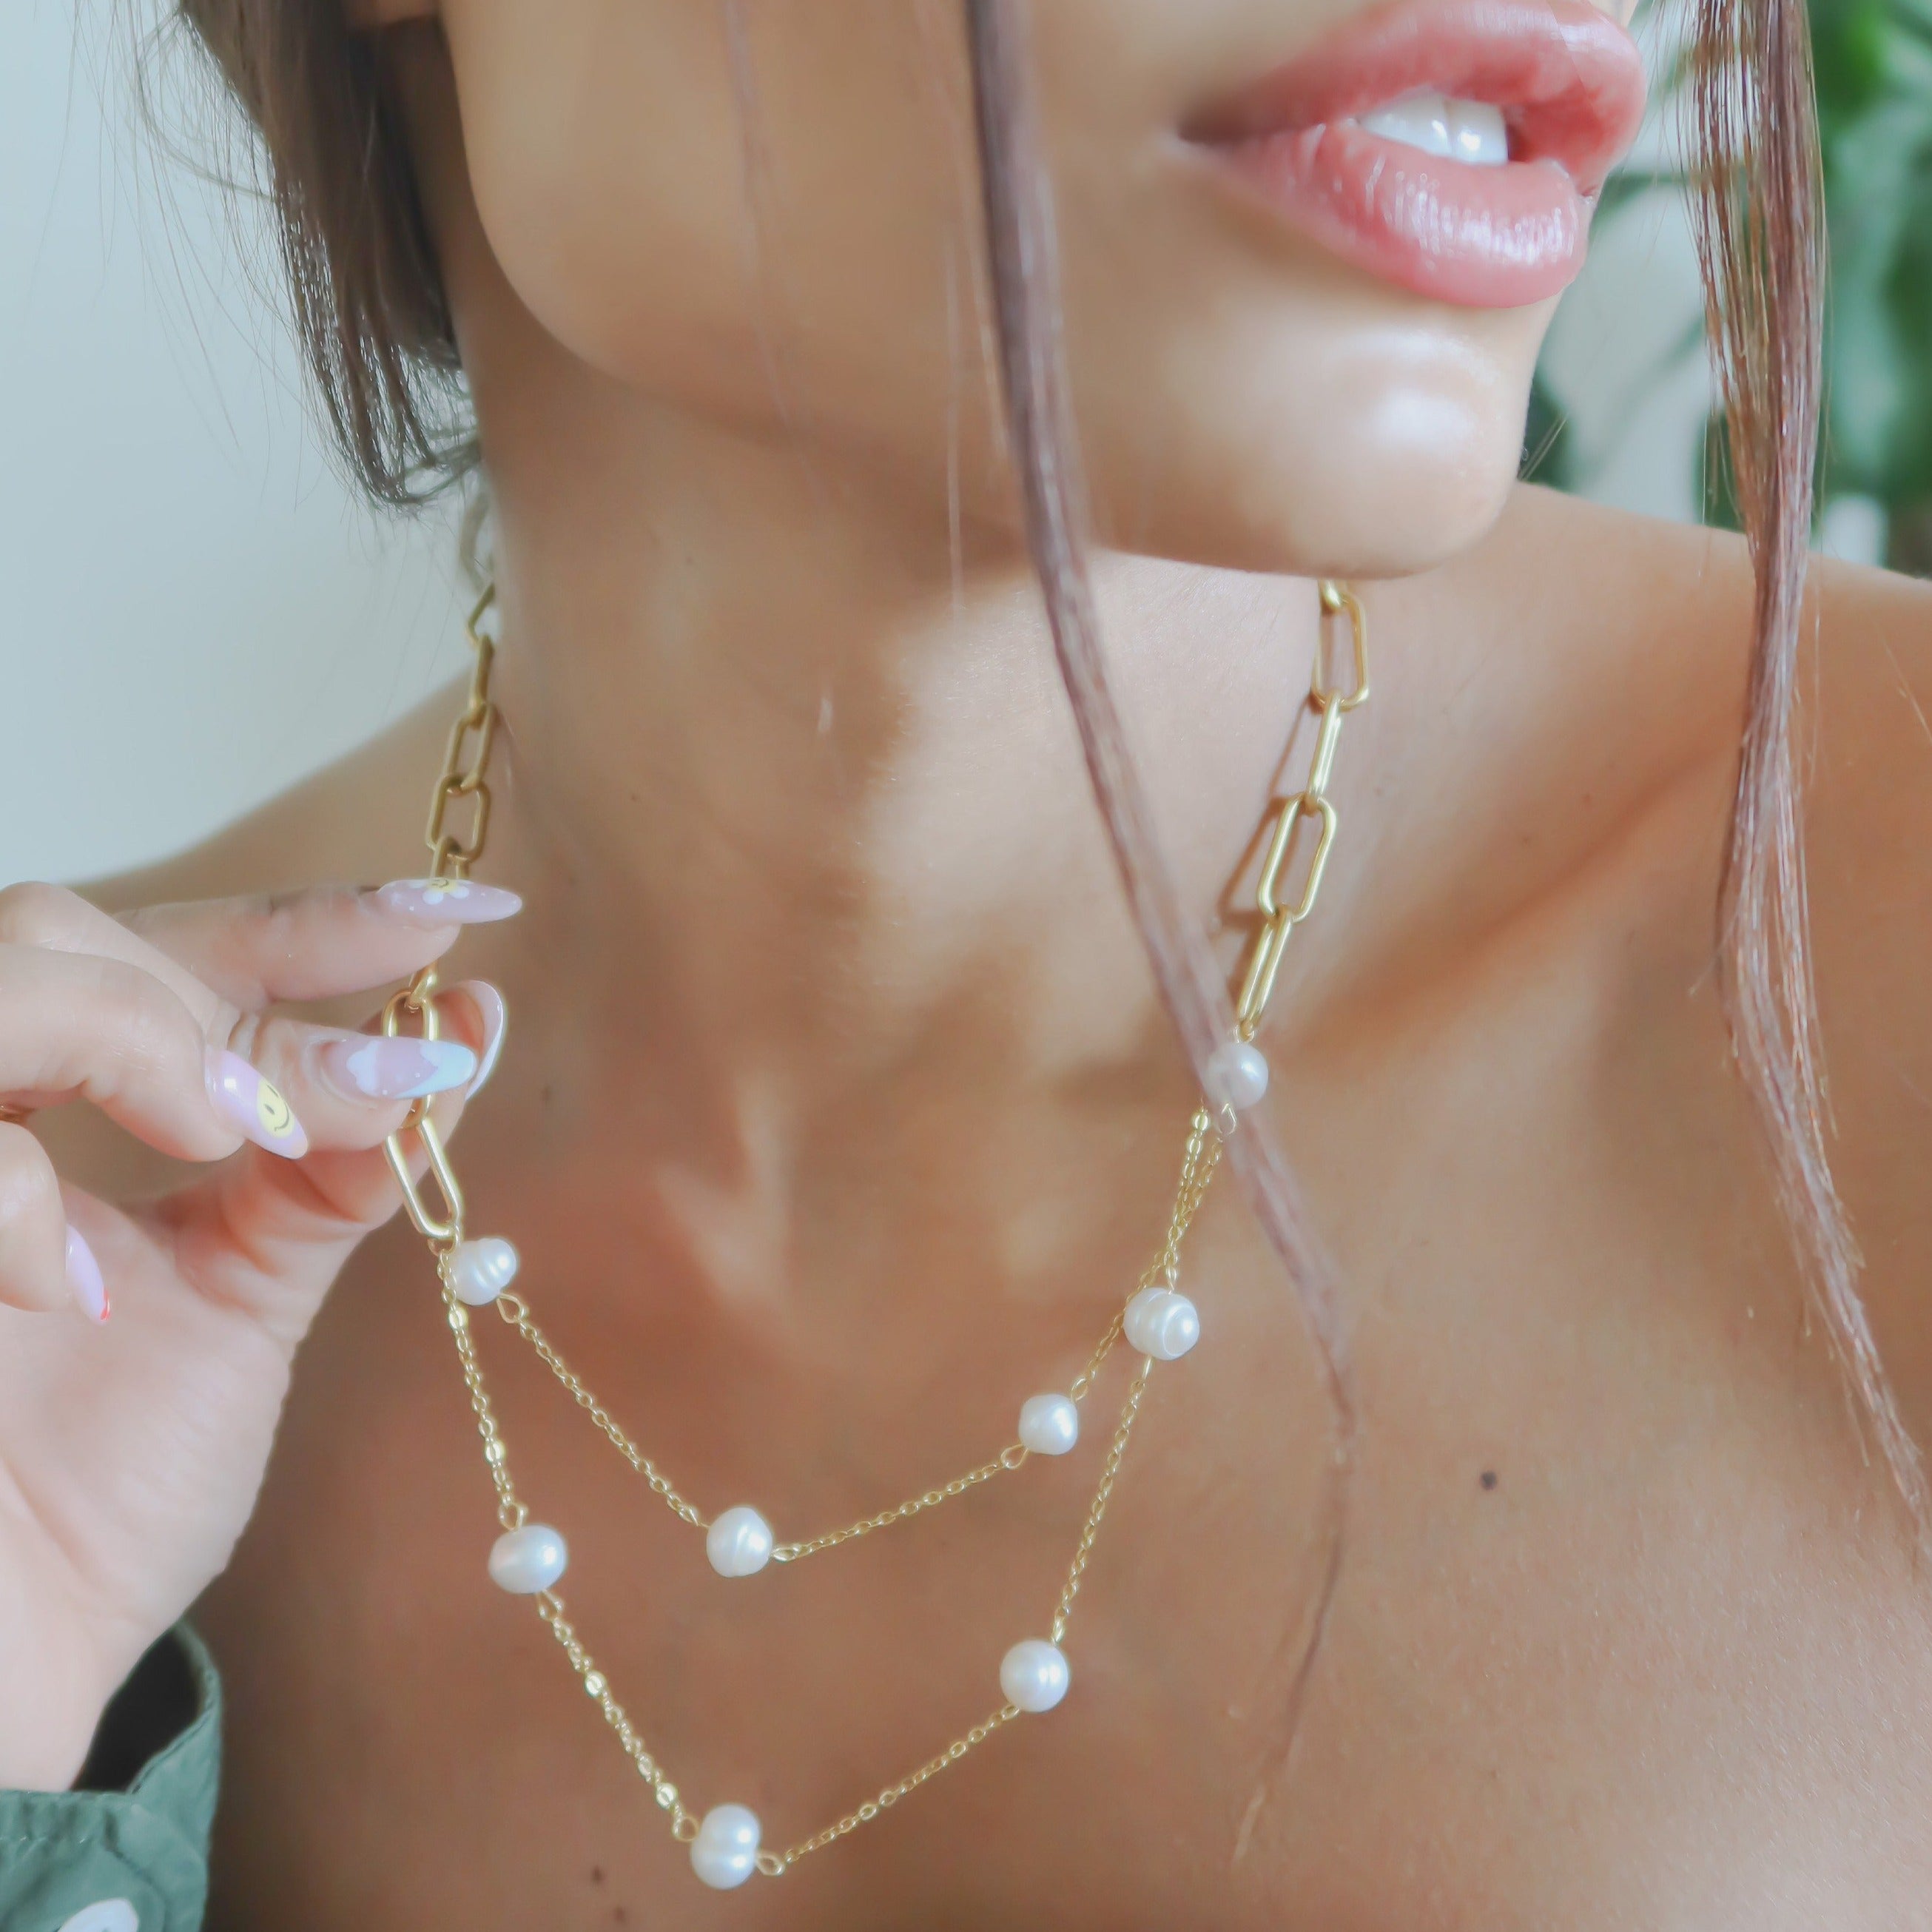 Adrianna Pearl Chain Necklace - Epico Designs 